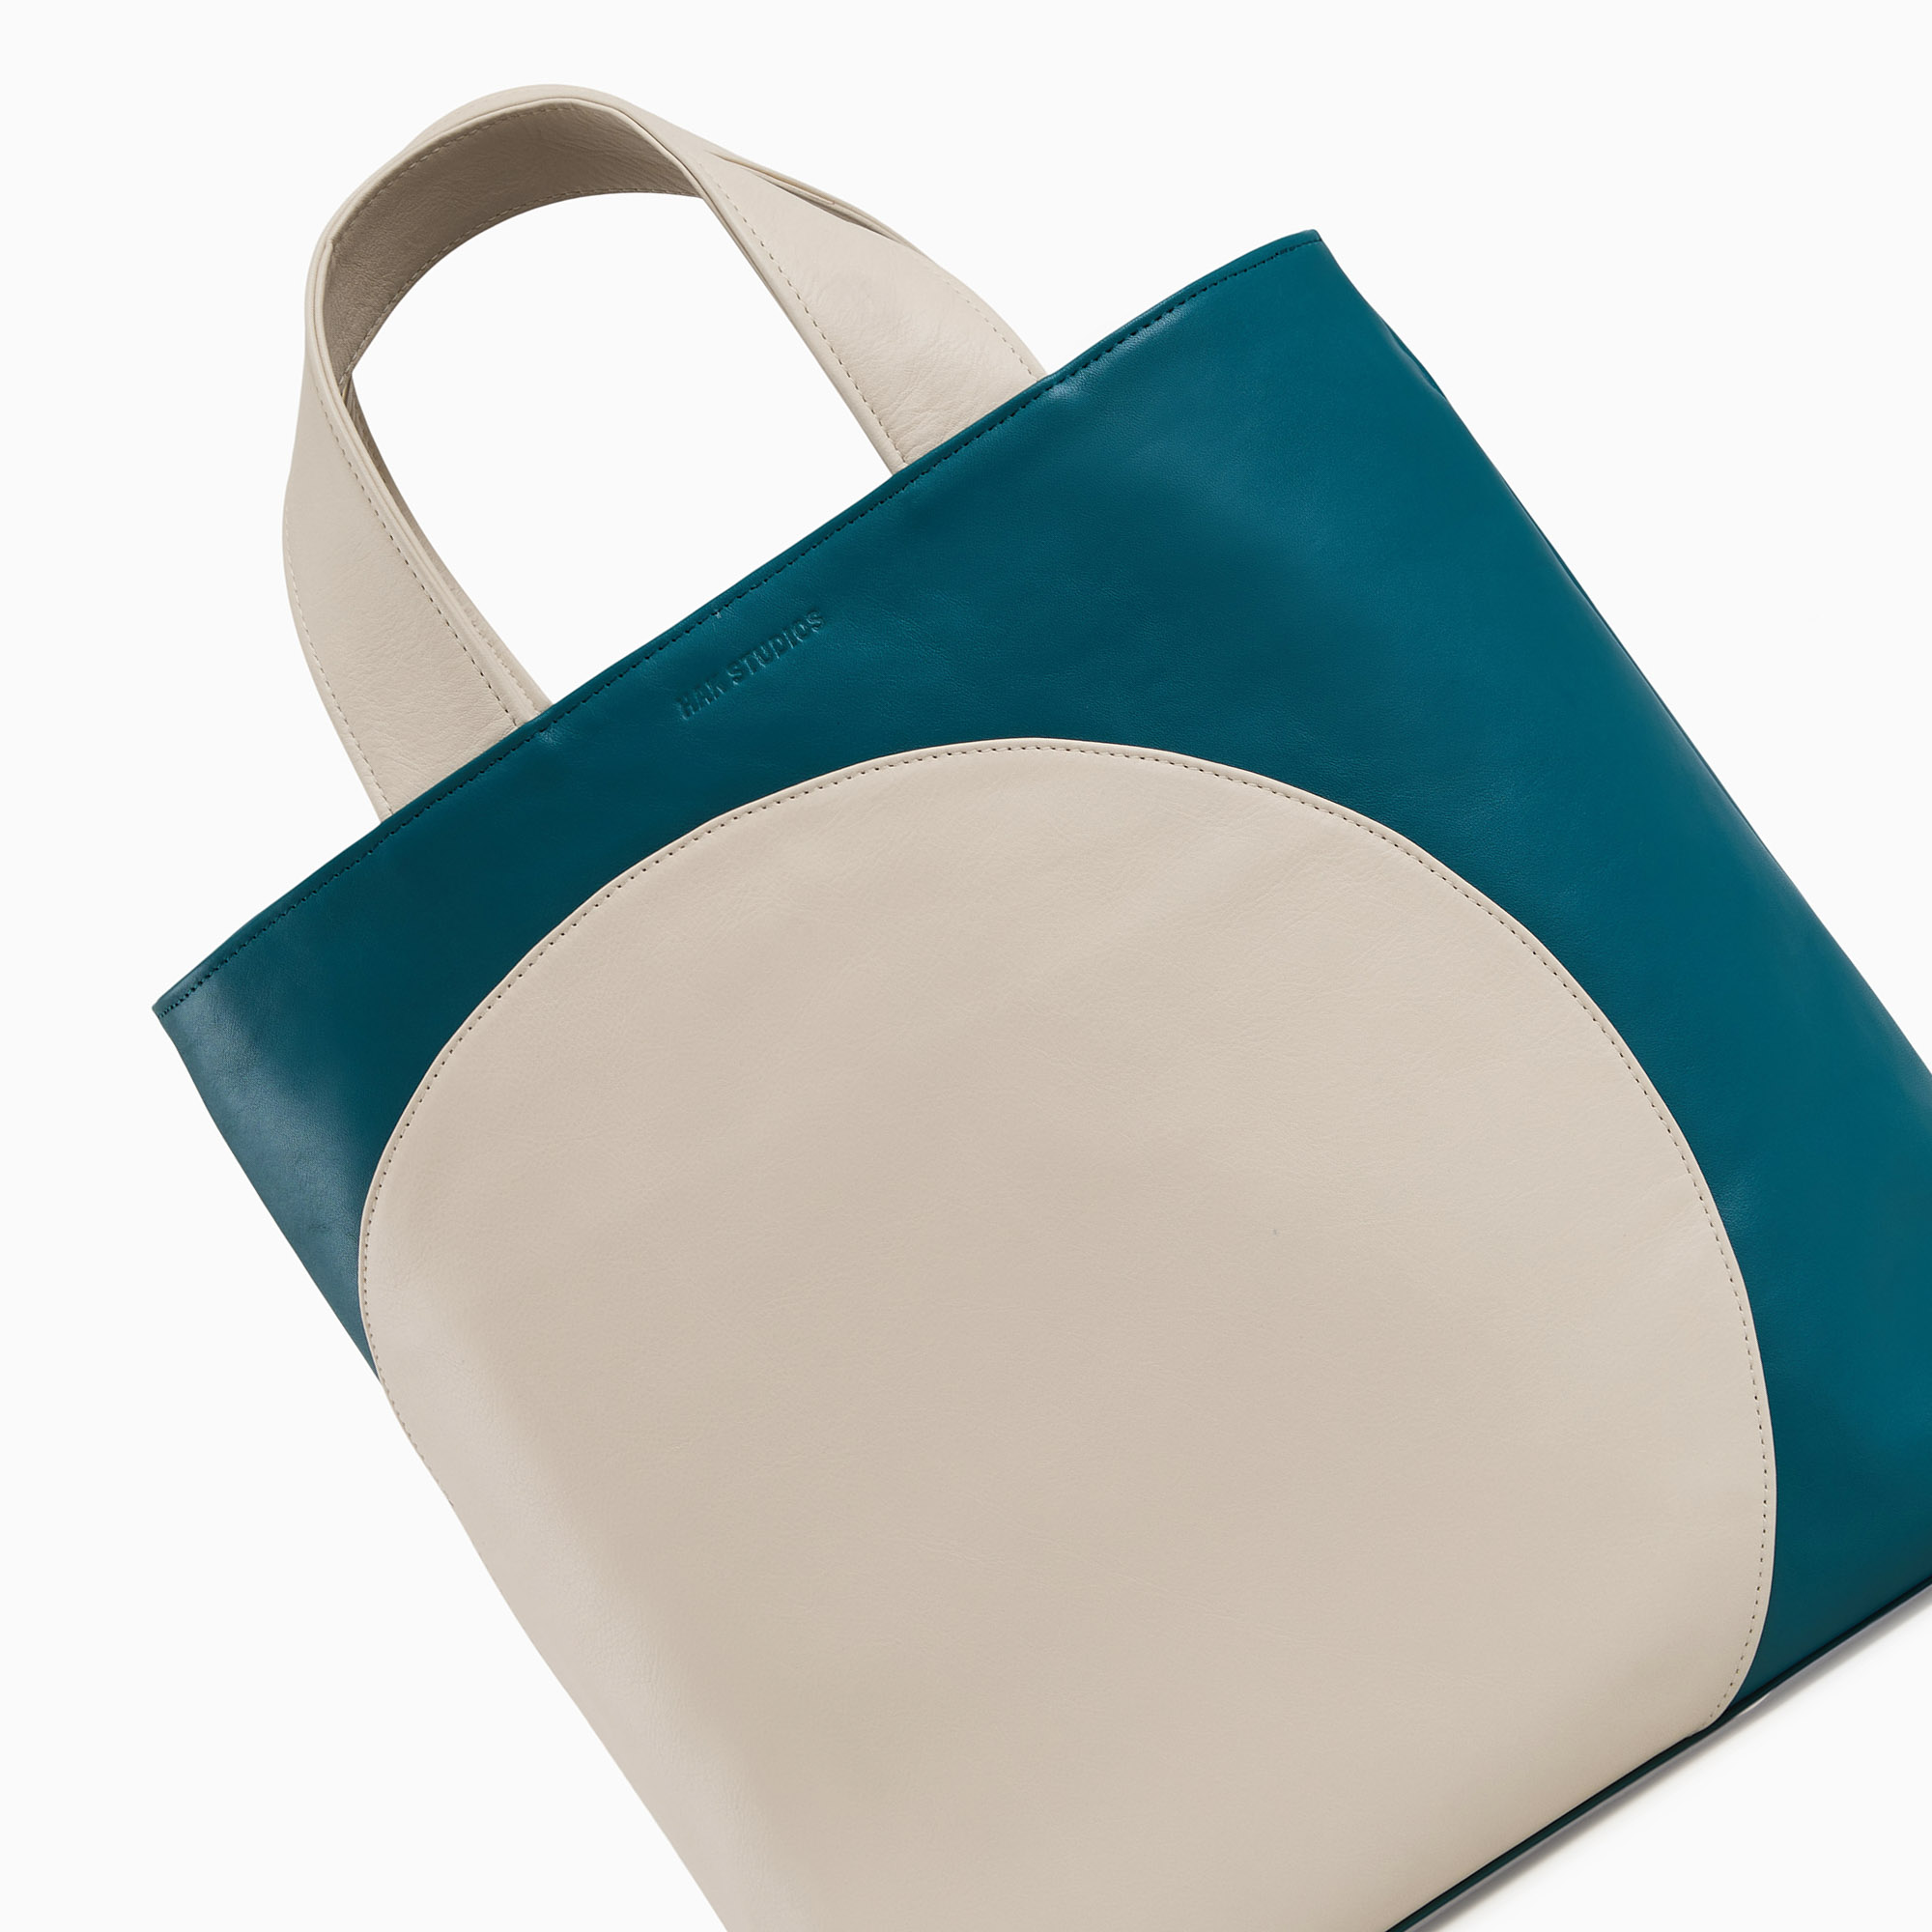 Leather handbag in beige-blue color